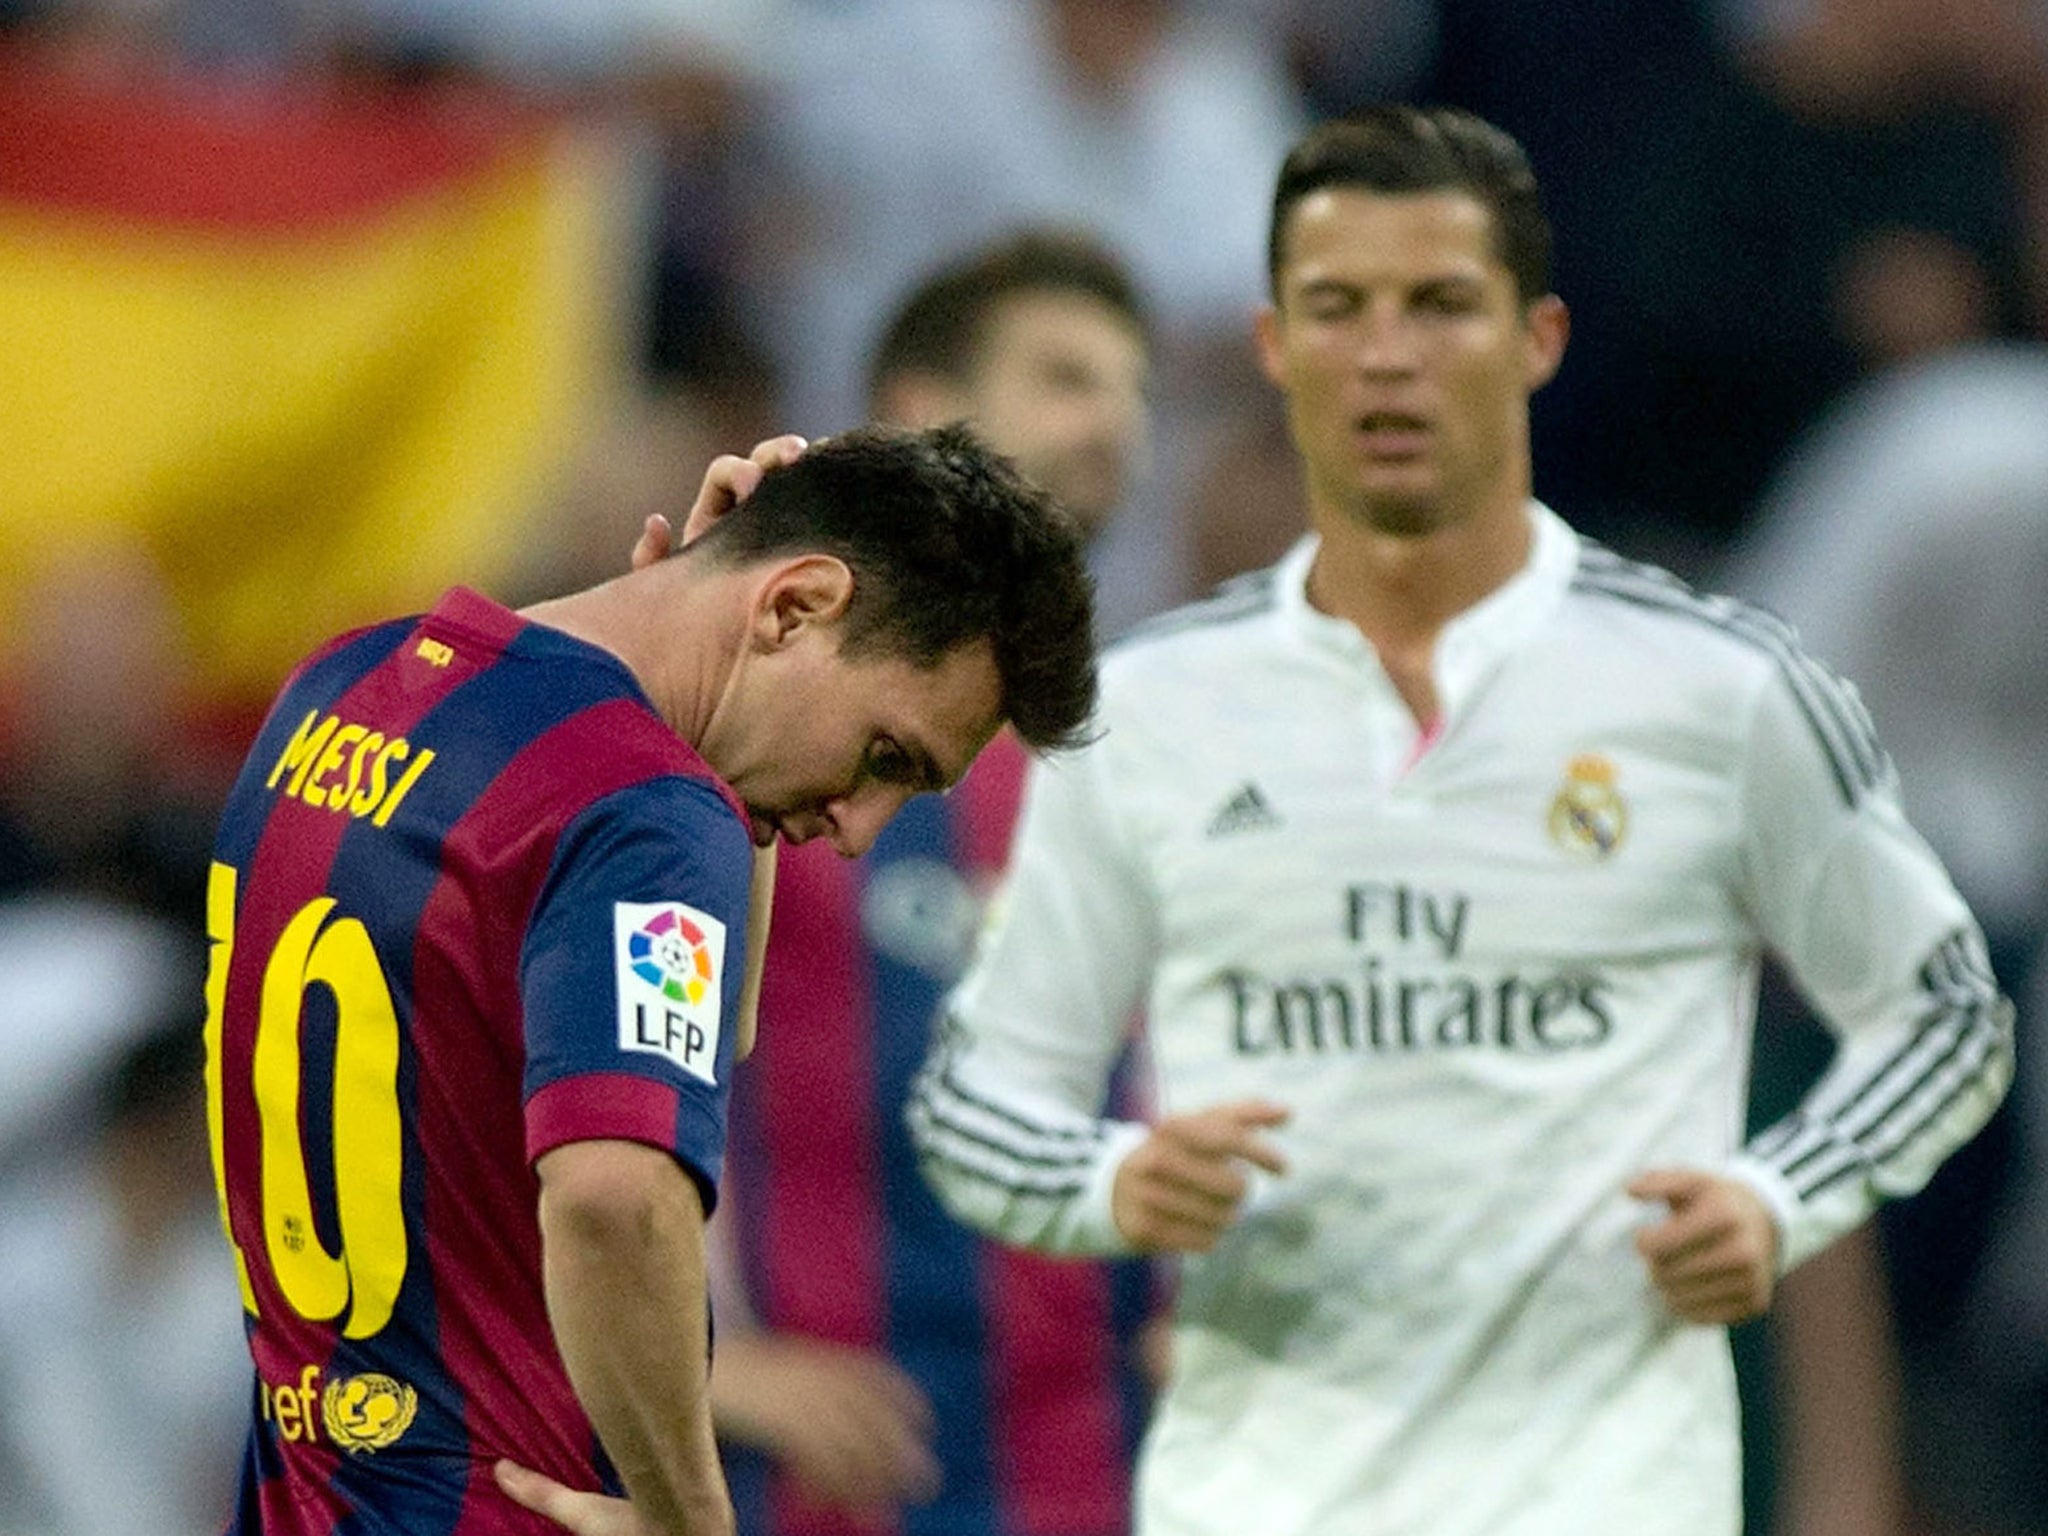 Cristiano Ronaldo vs Lionel Messi: historical head-to-head record